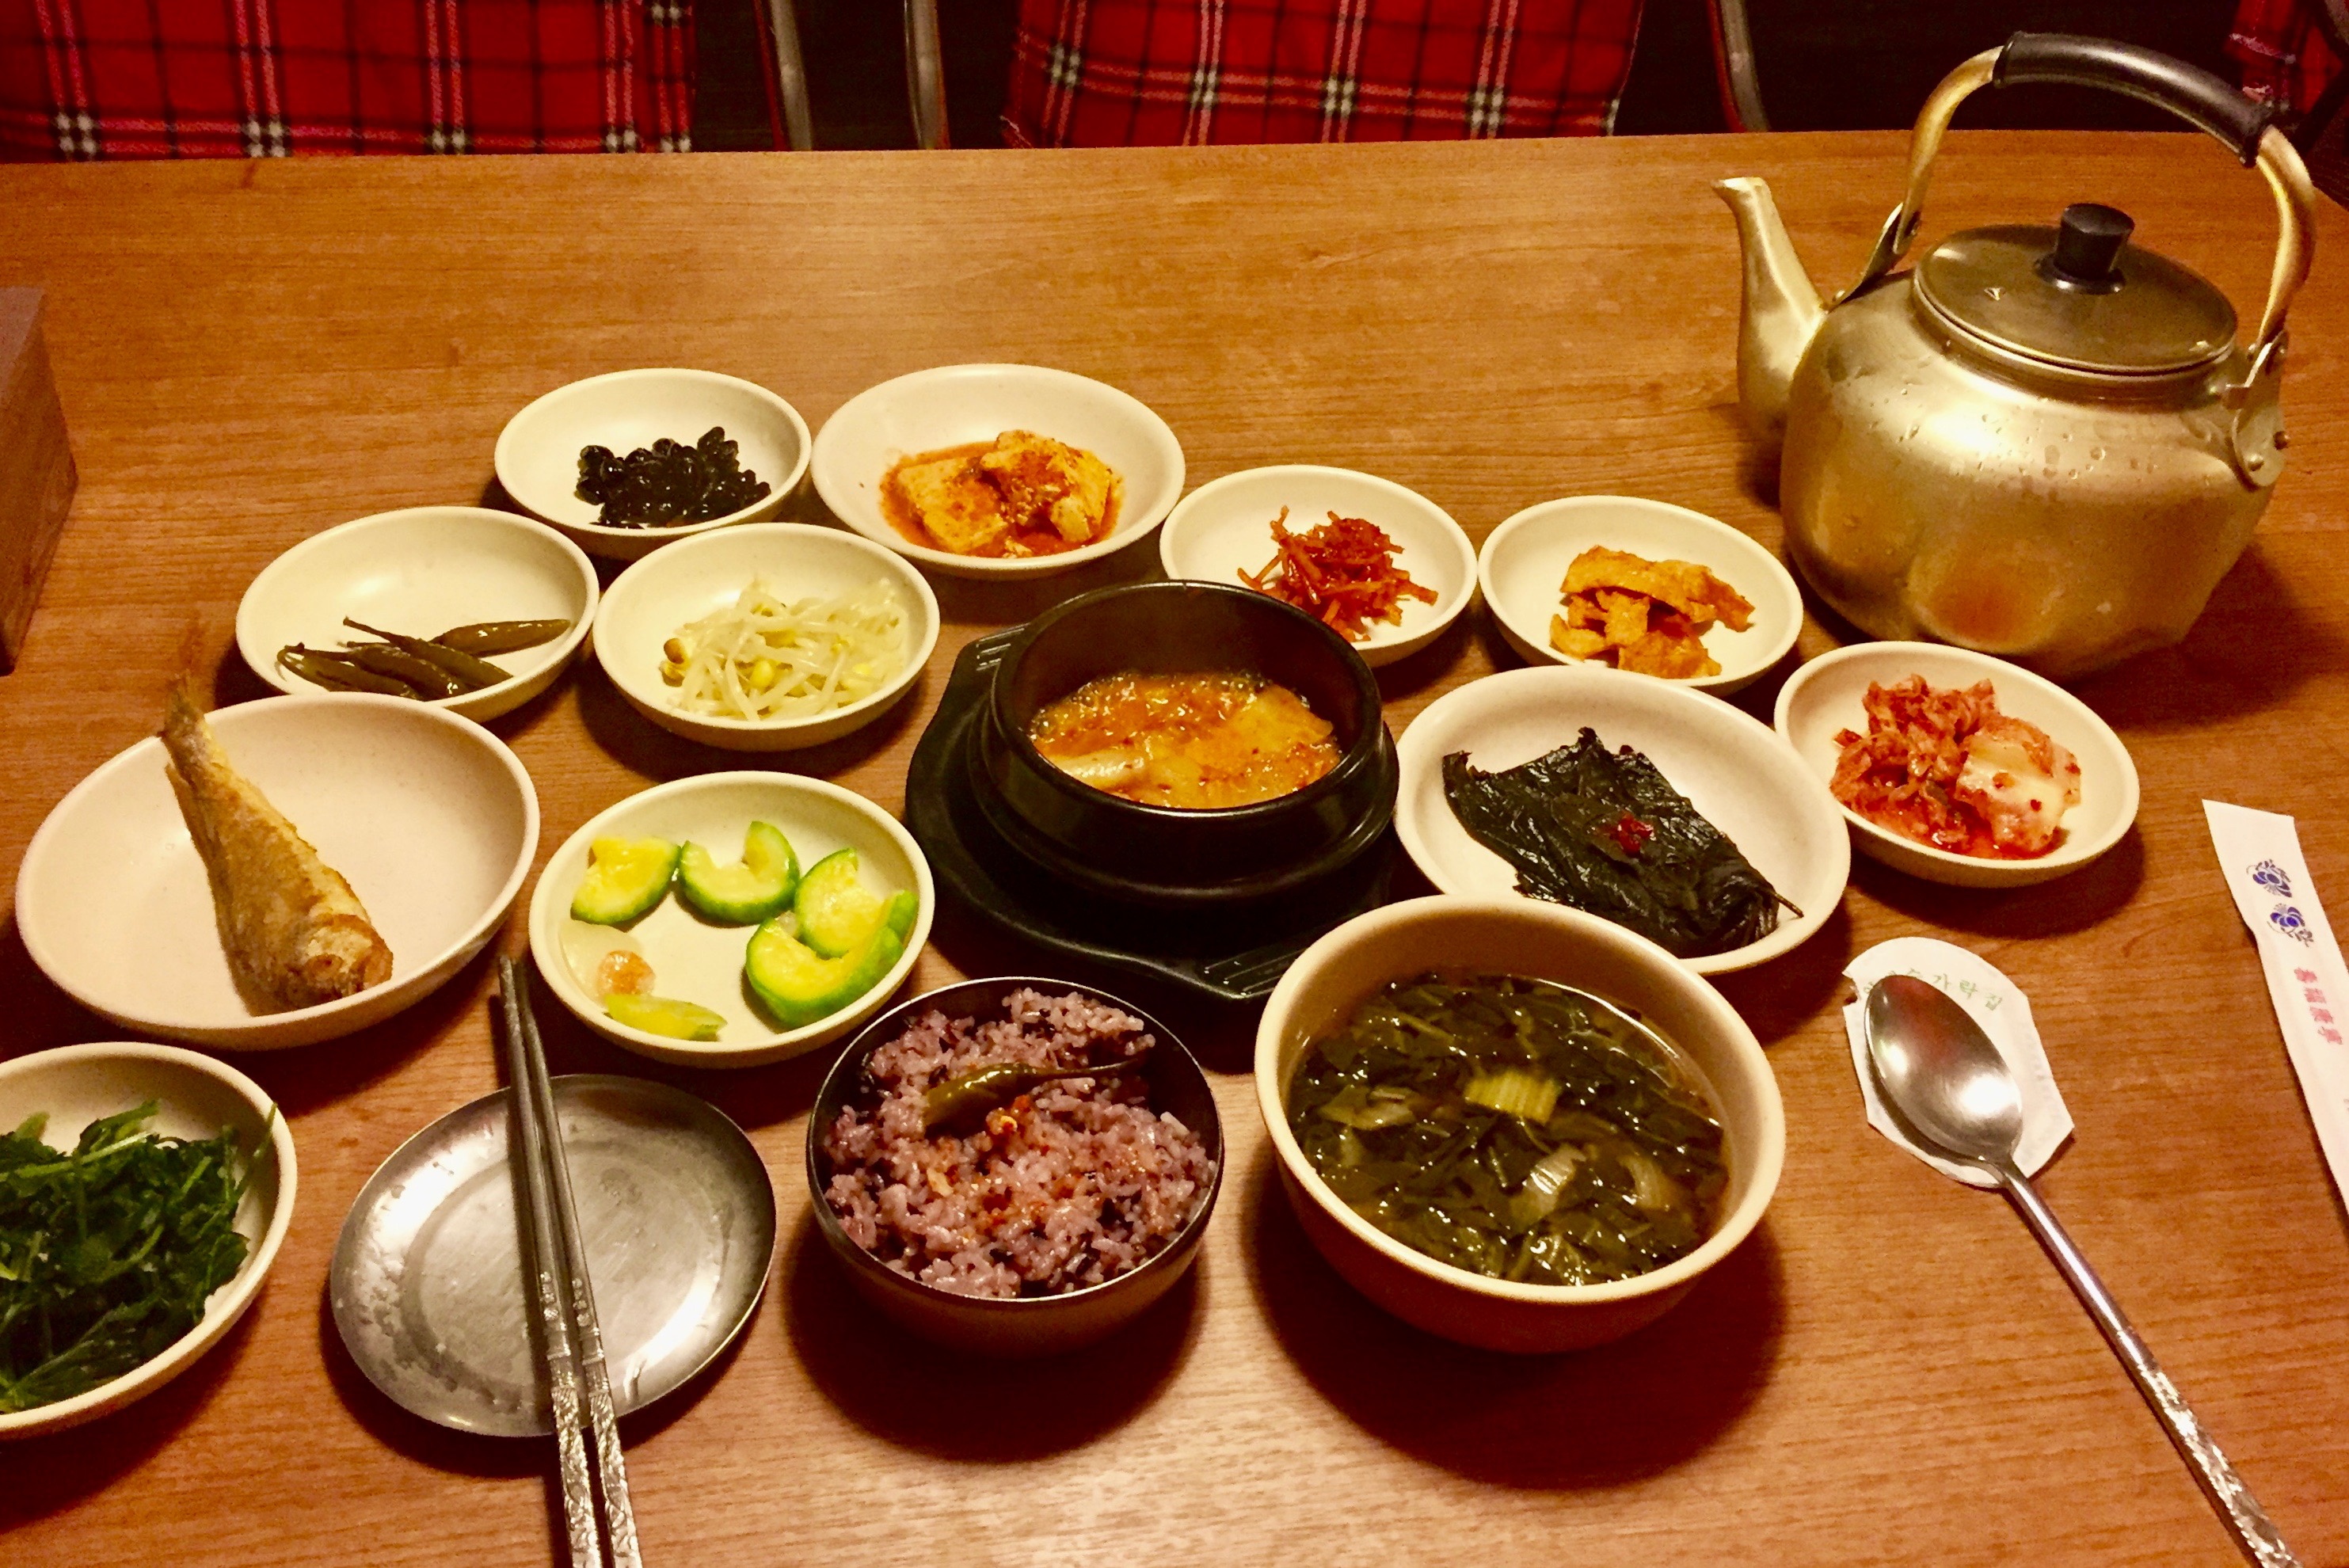 A modest Hanjeongsik meal